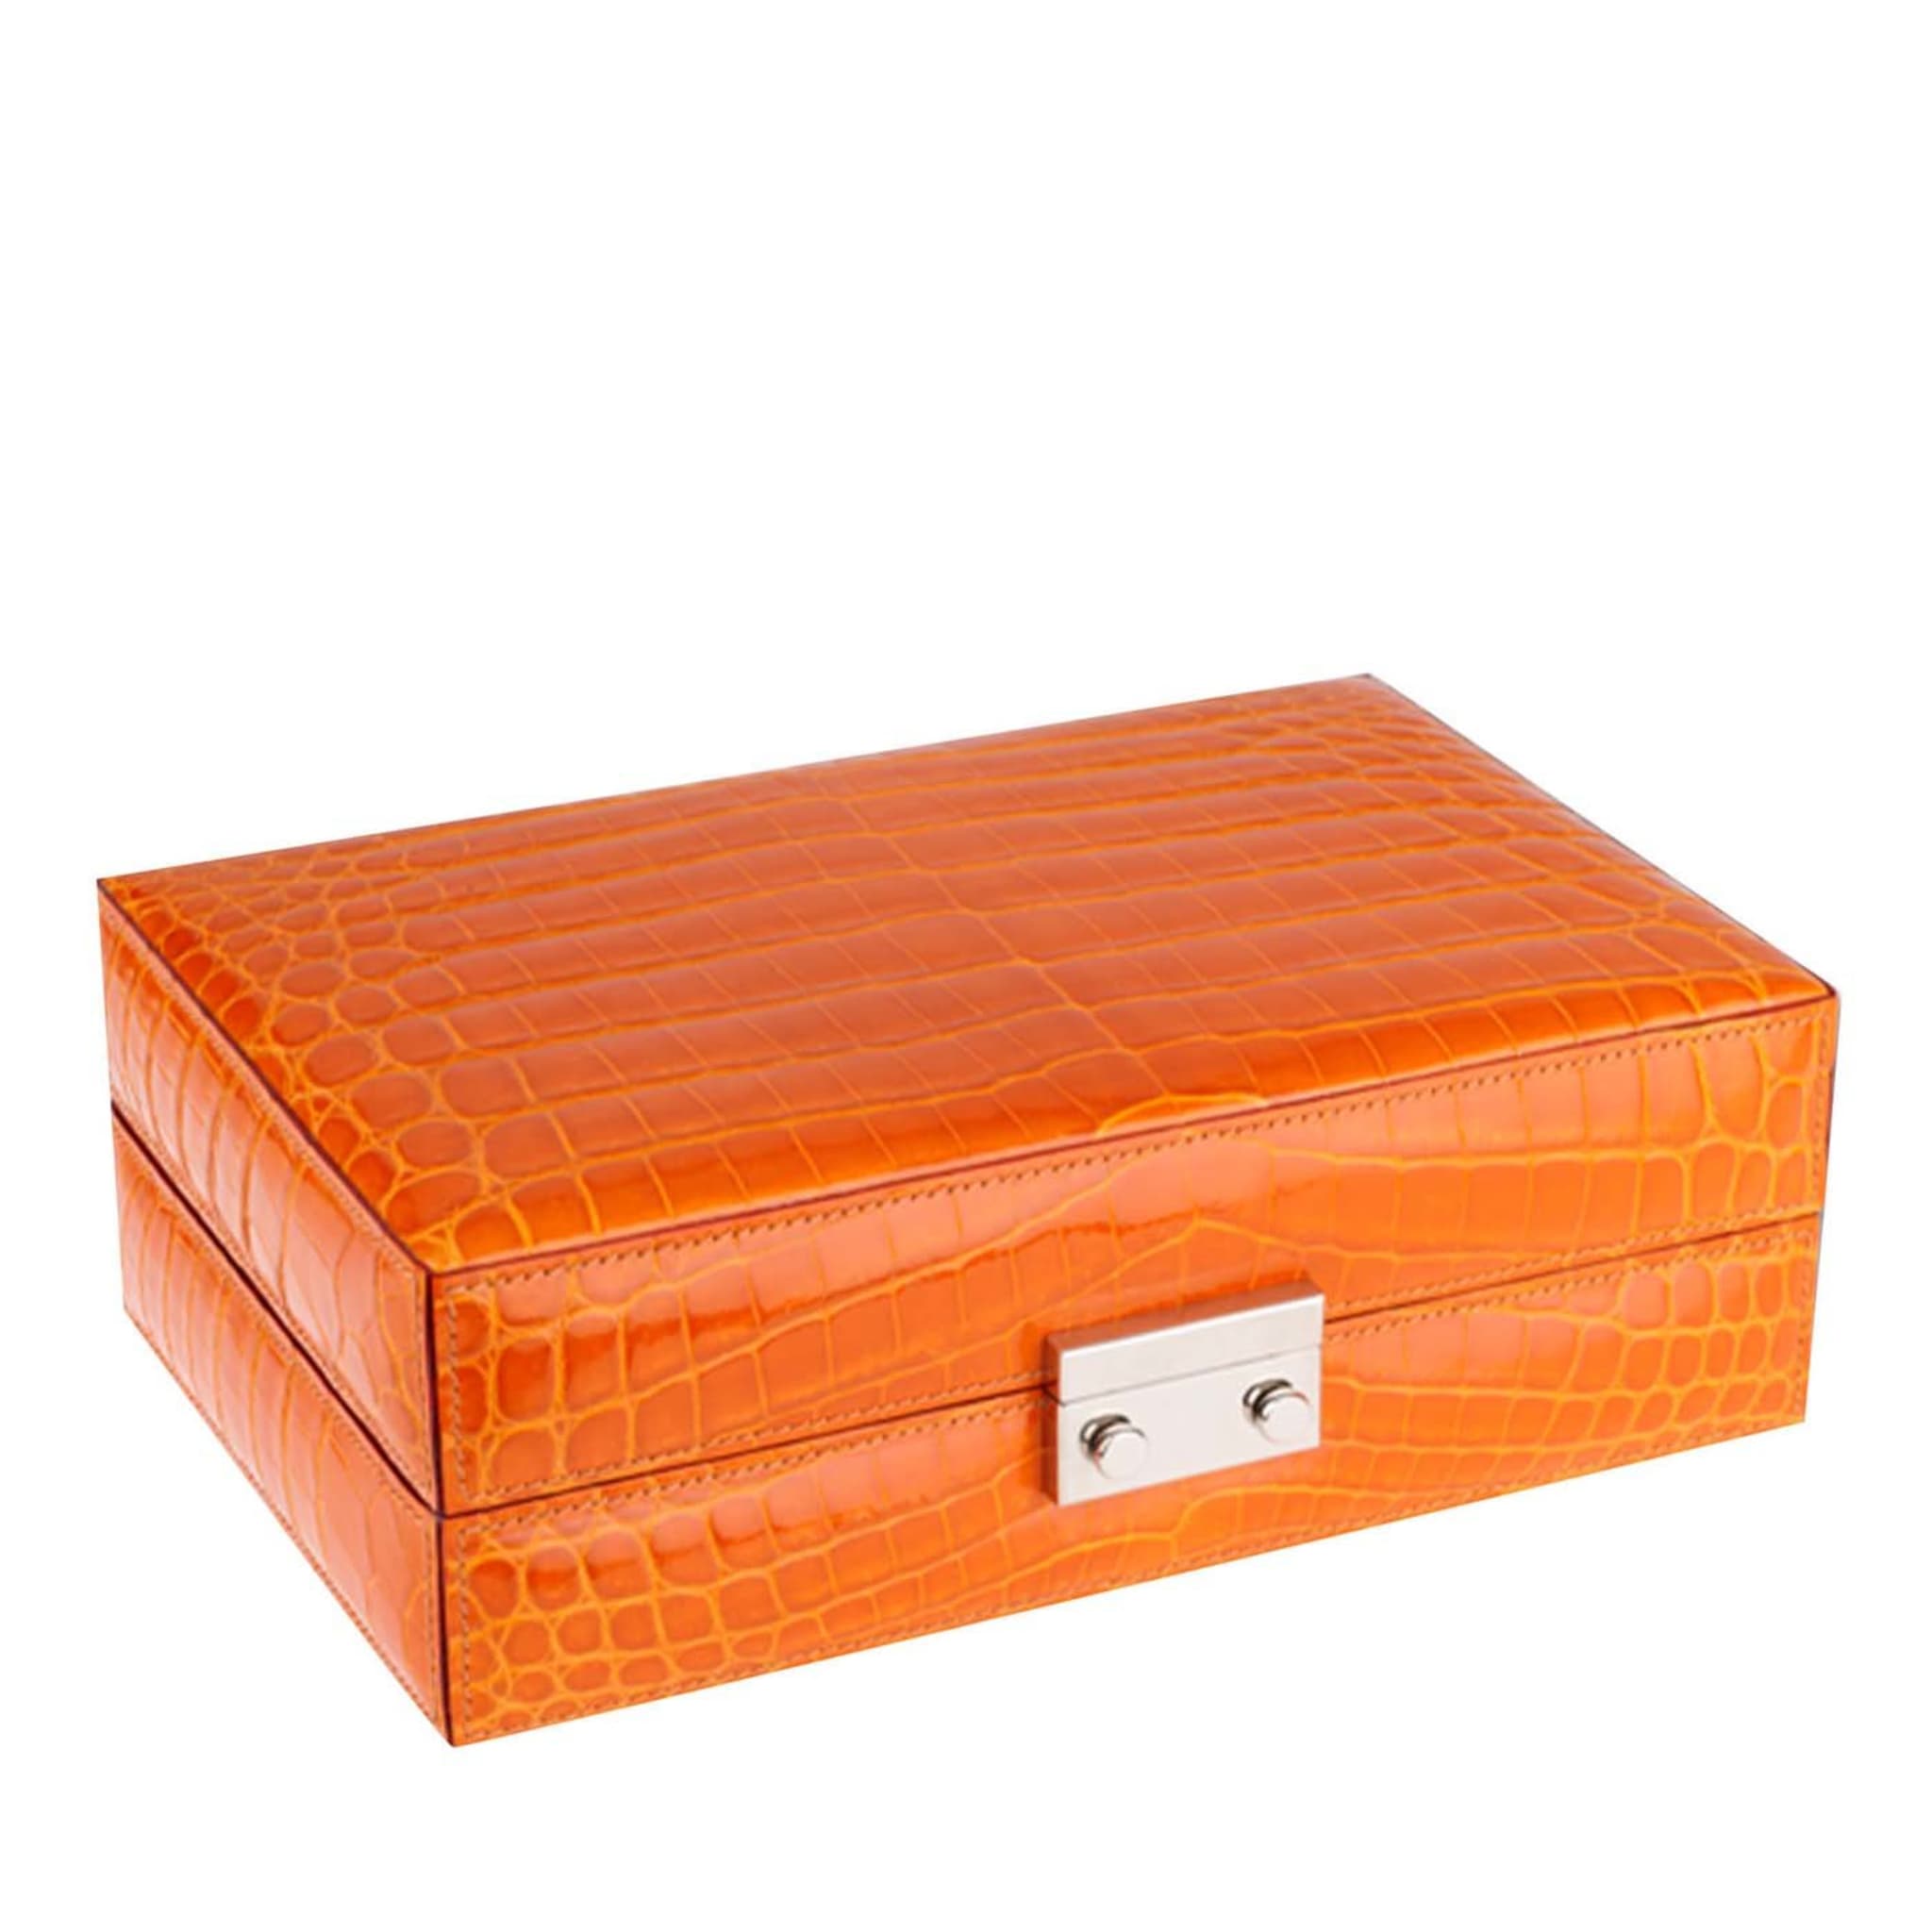 Orange Crocodile Jewelry Box - Main view